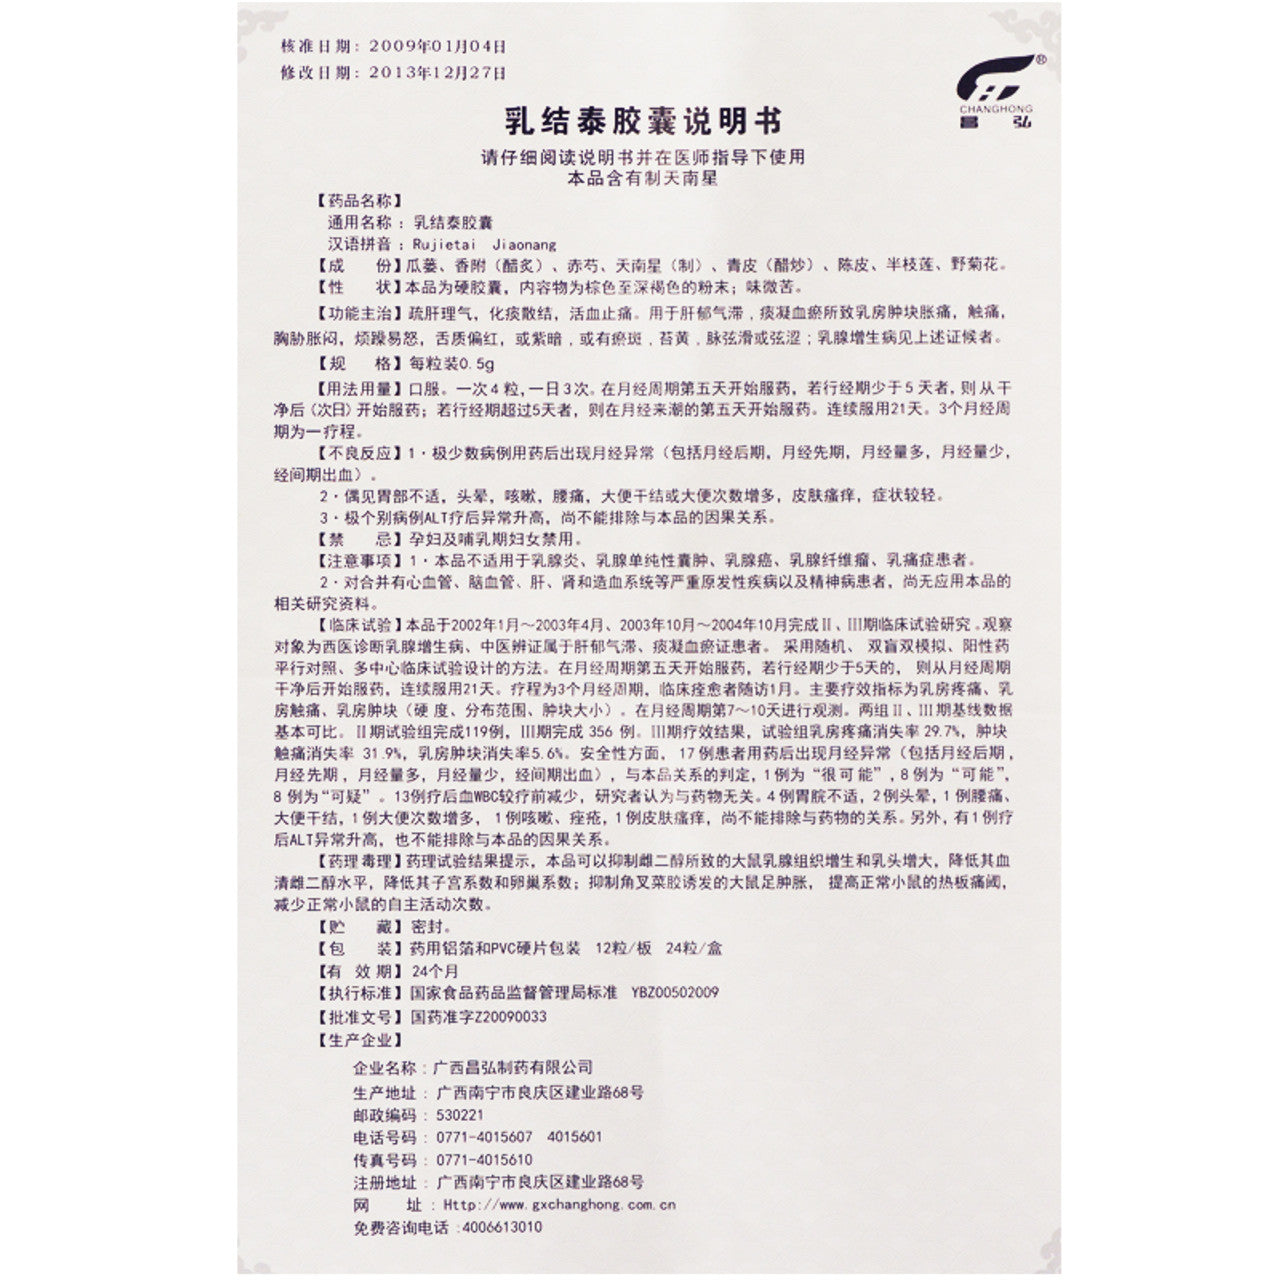 China Herb. Rujietai Capsule or Rujietai Jiaonang for breast hyperplasia. Ru Jie Tai Jiao Nang